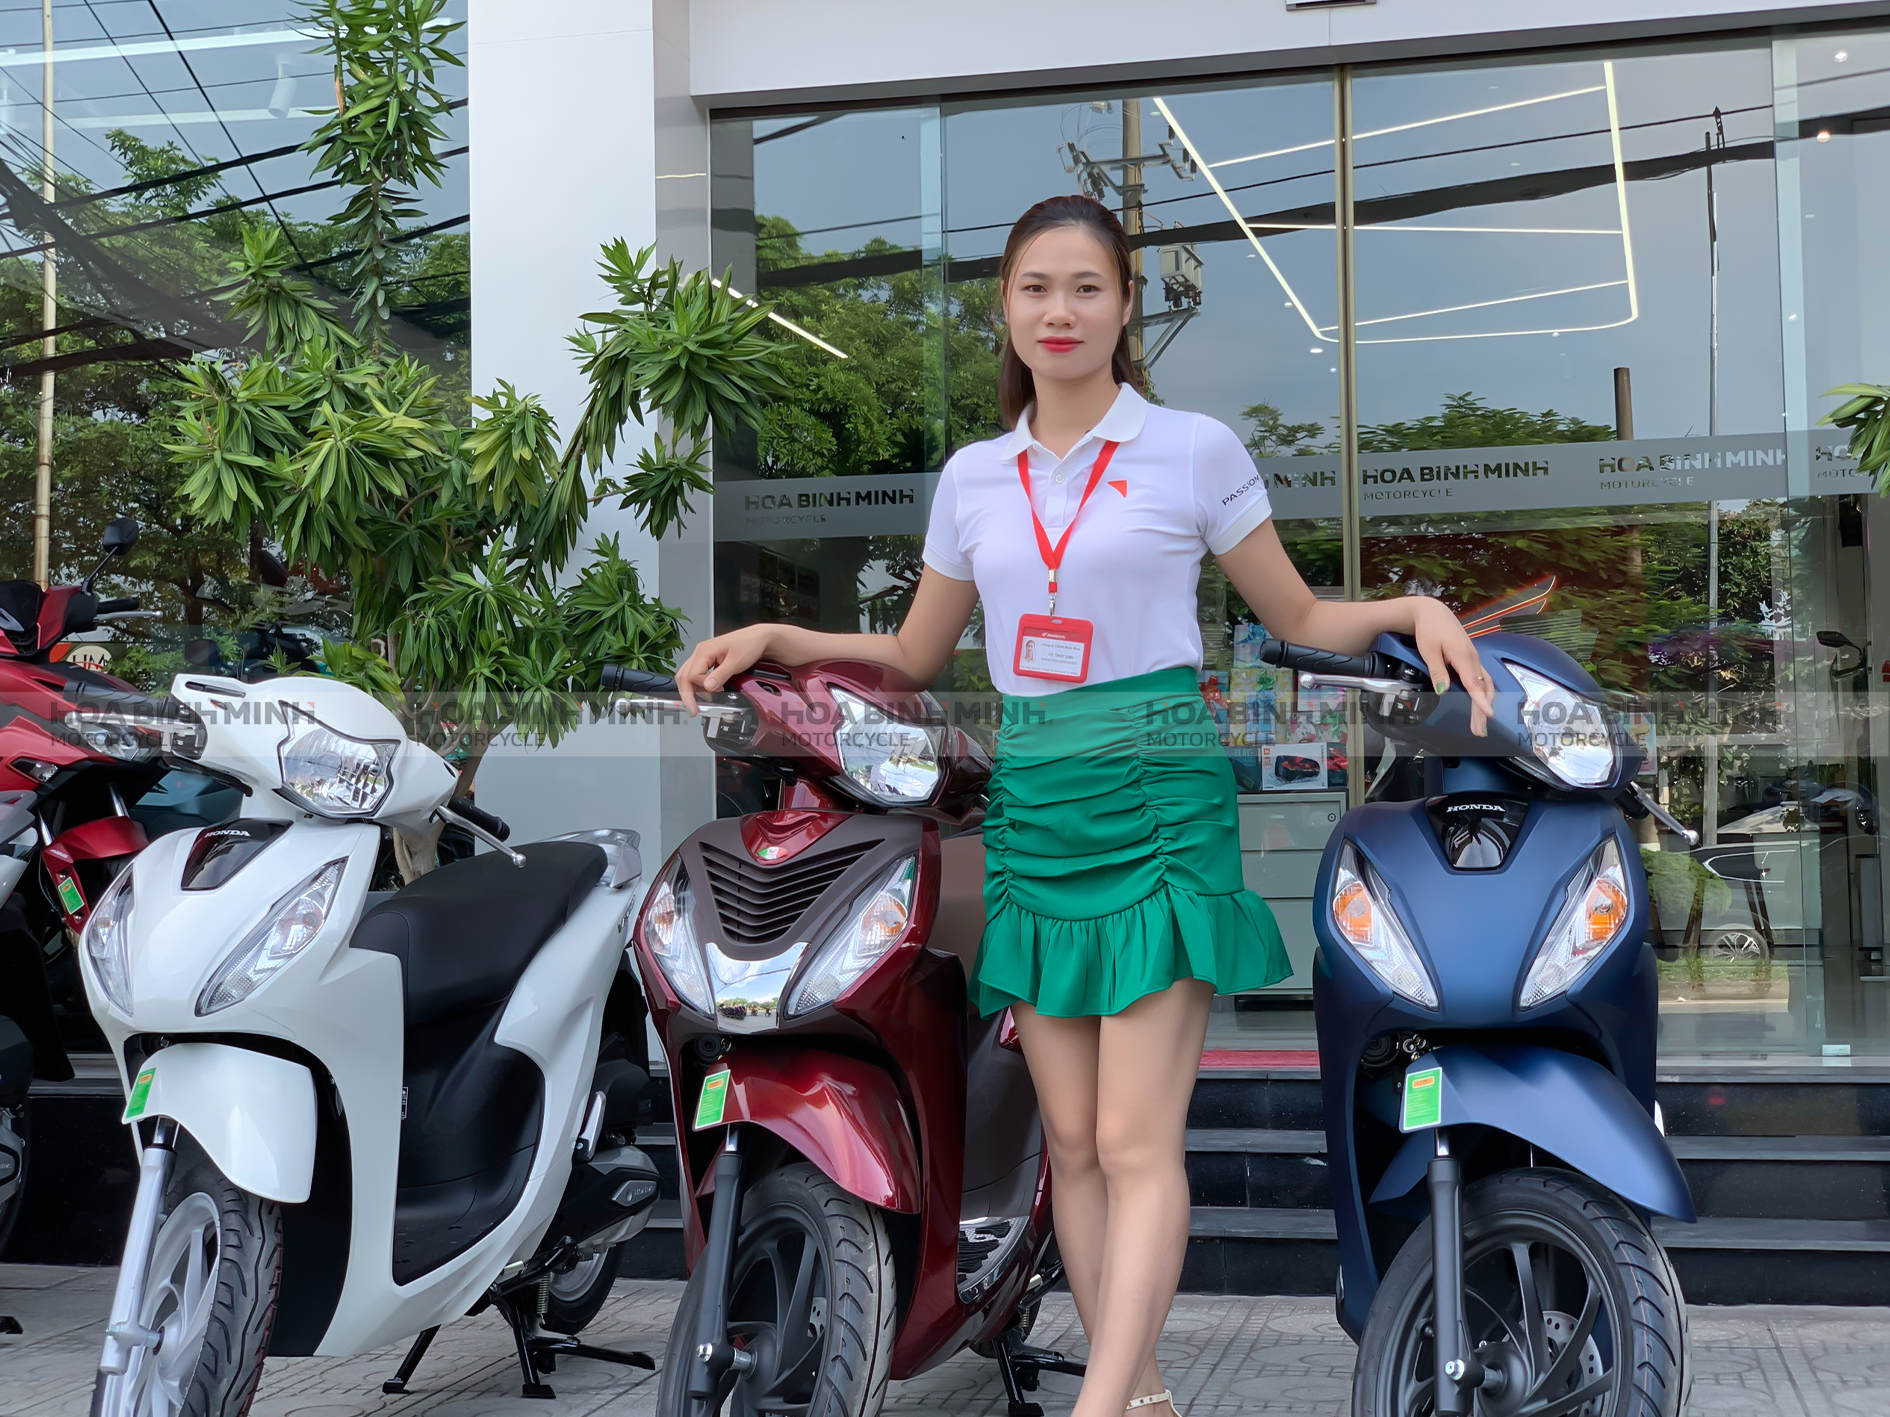 Giá Xe Máy Honda Mới Nhất Tháng 8/2022 | Giá Xe Tay Ga Xuống Dốc "Không  Phanh" - HÒA BÌNH MINH